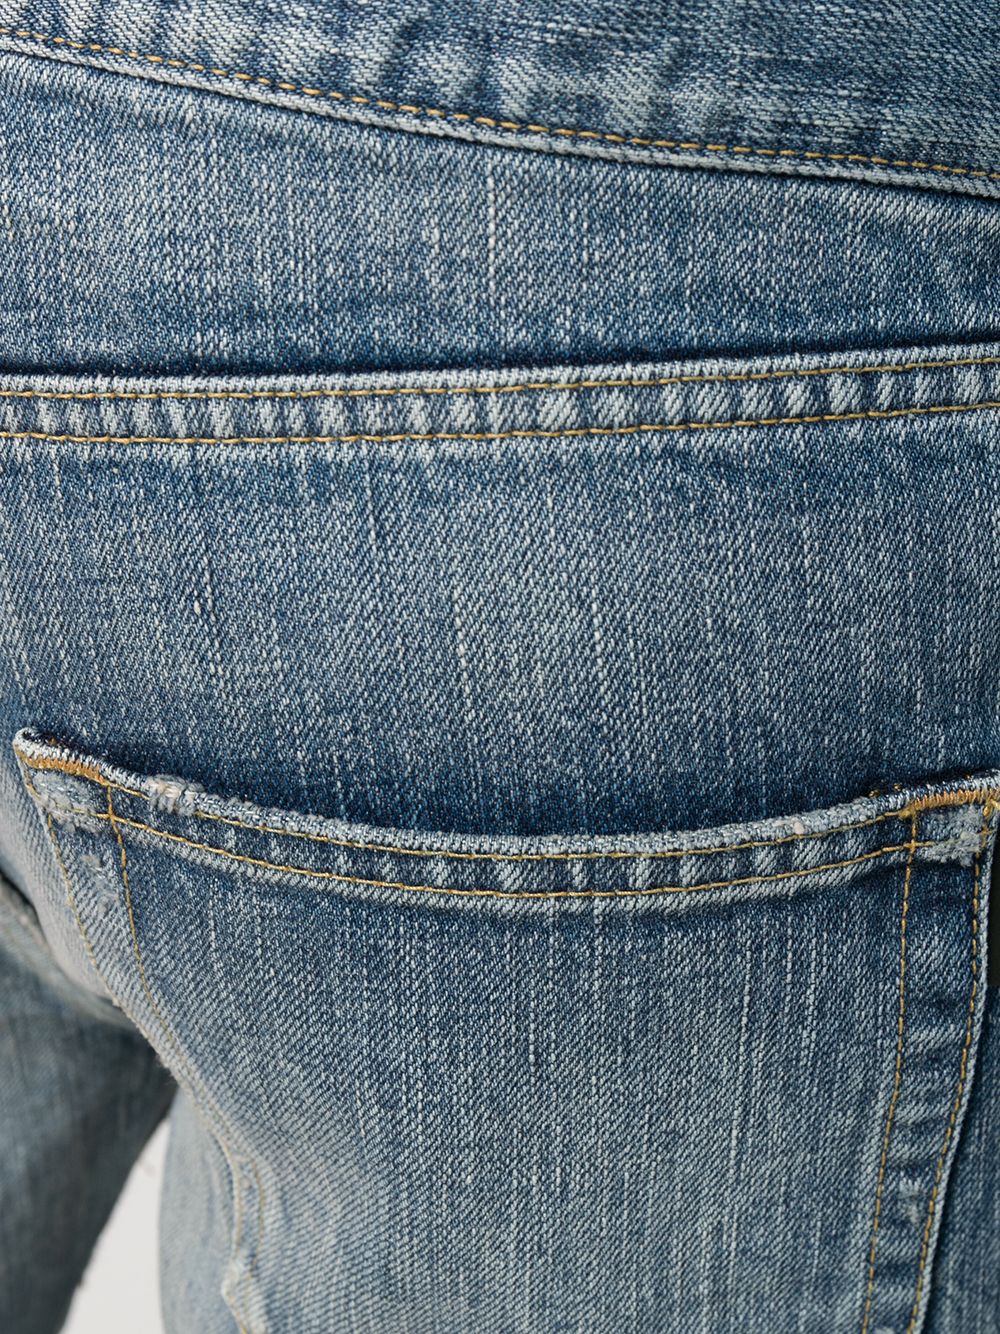 фото Saint laurent джинсы кроя слим